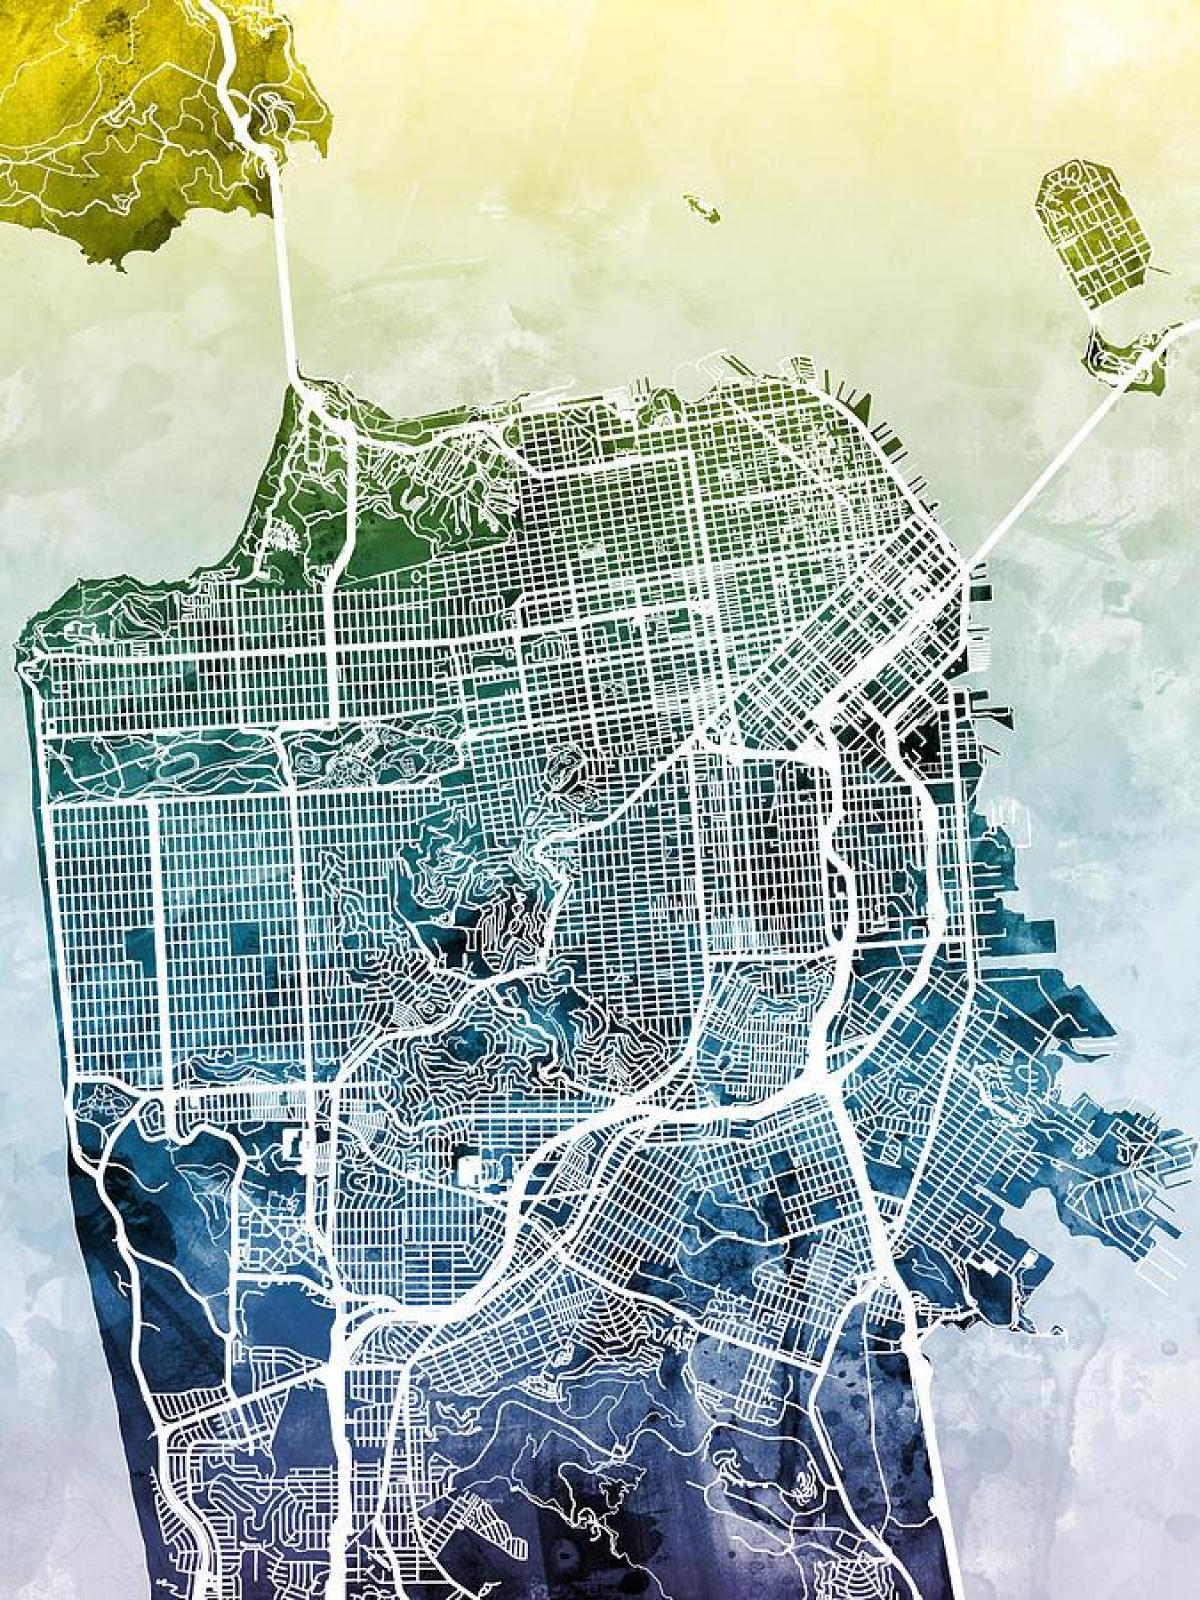 Peta dari kota San Francisco art